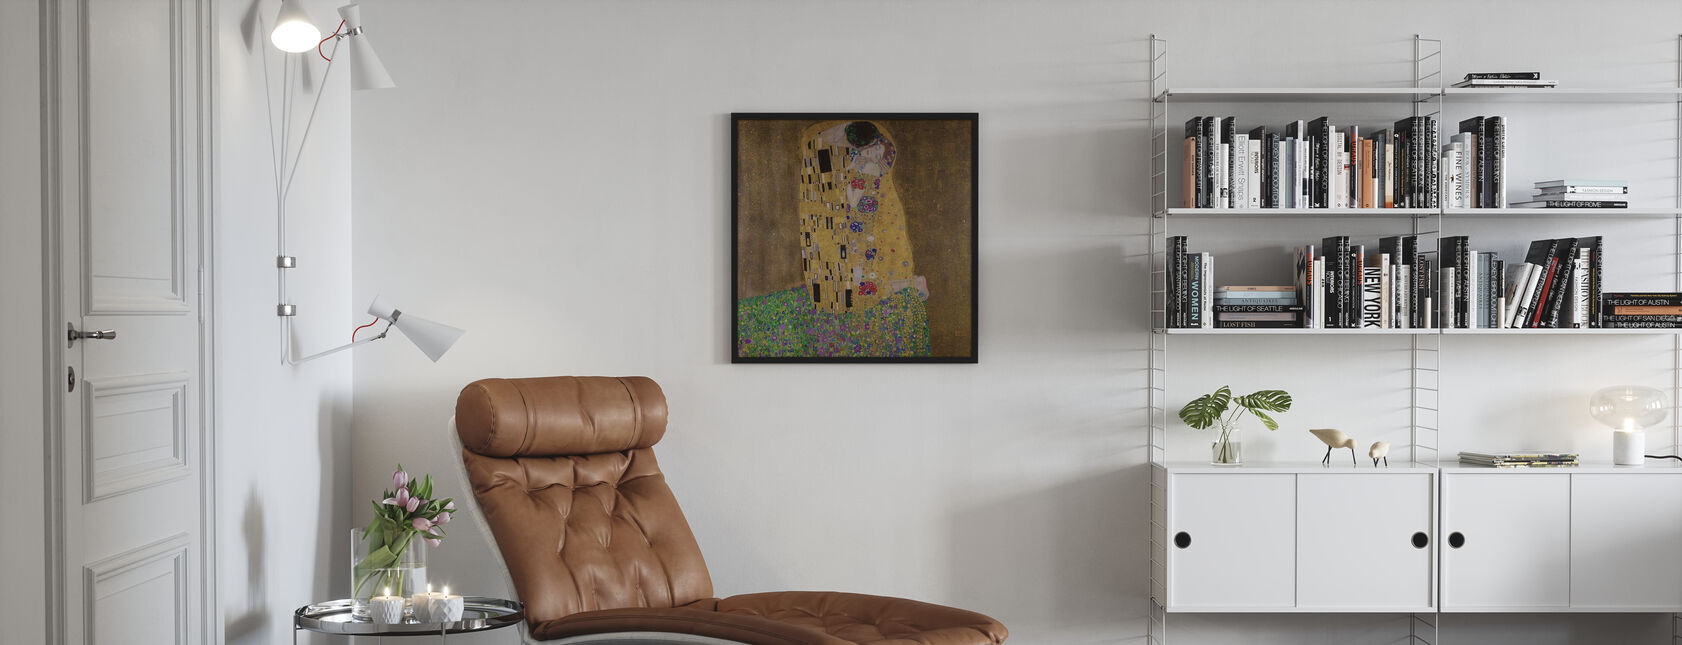 De kus, Gustav Klimt - Poster - Woonkamer